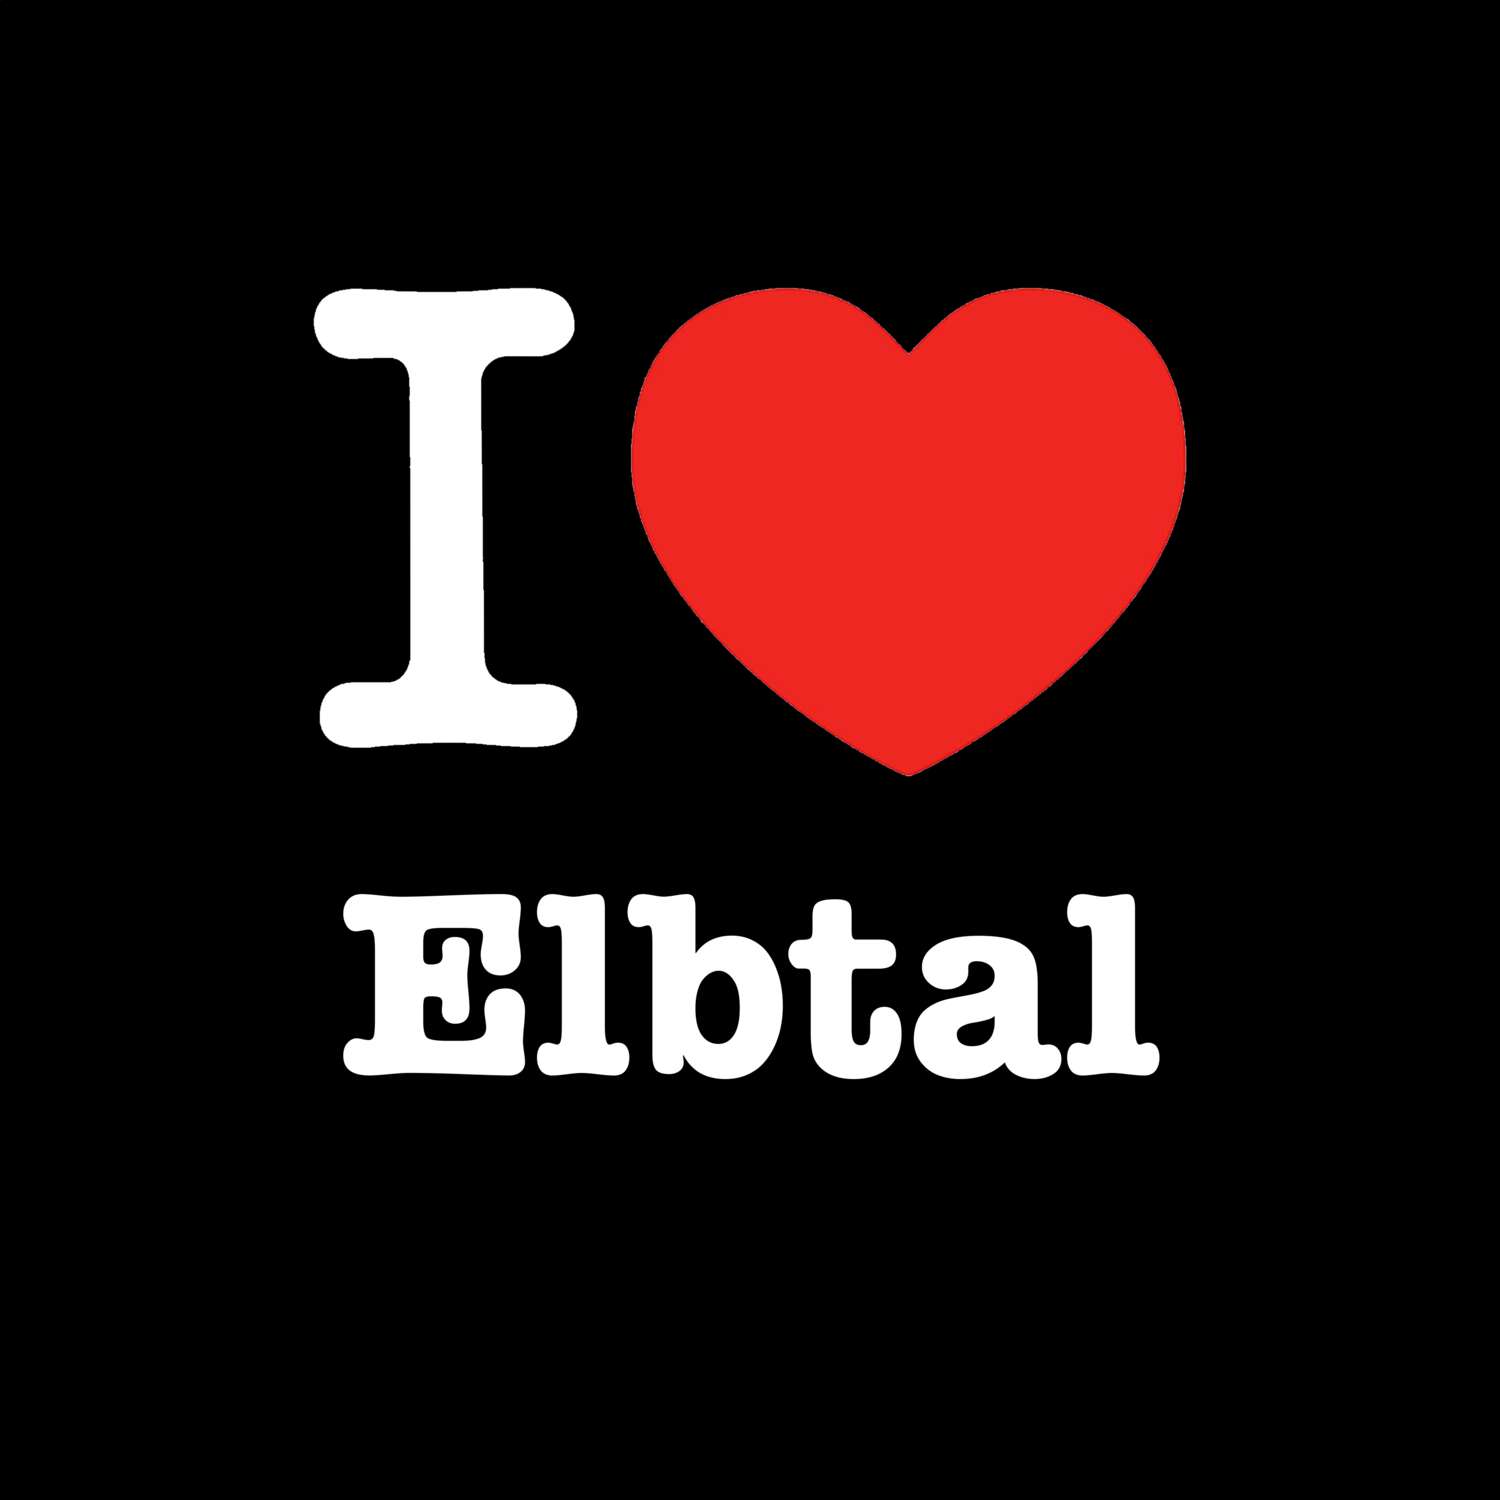 Elbtal T-Shirt »I love«